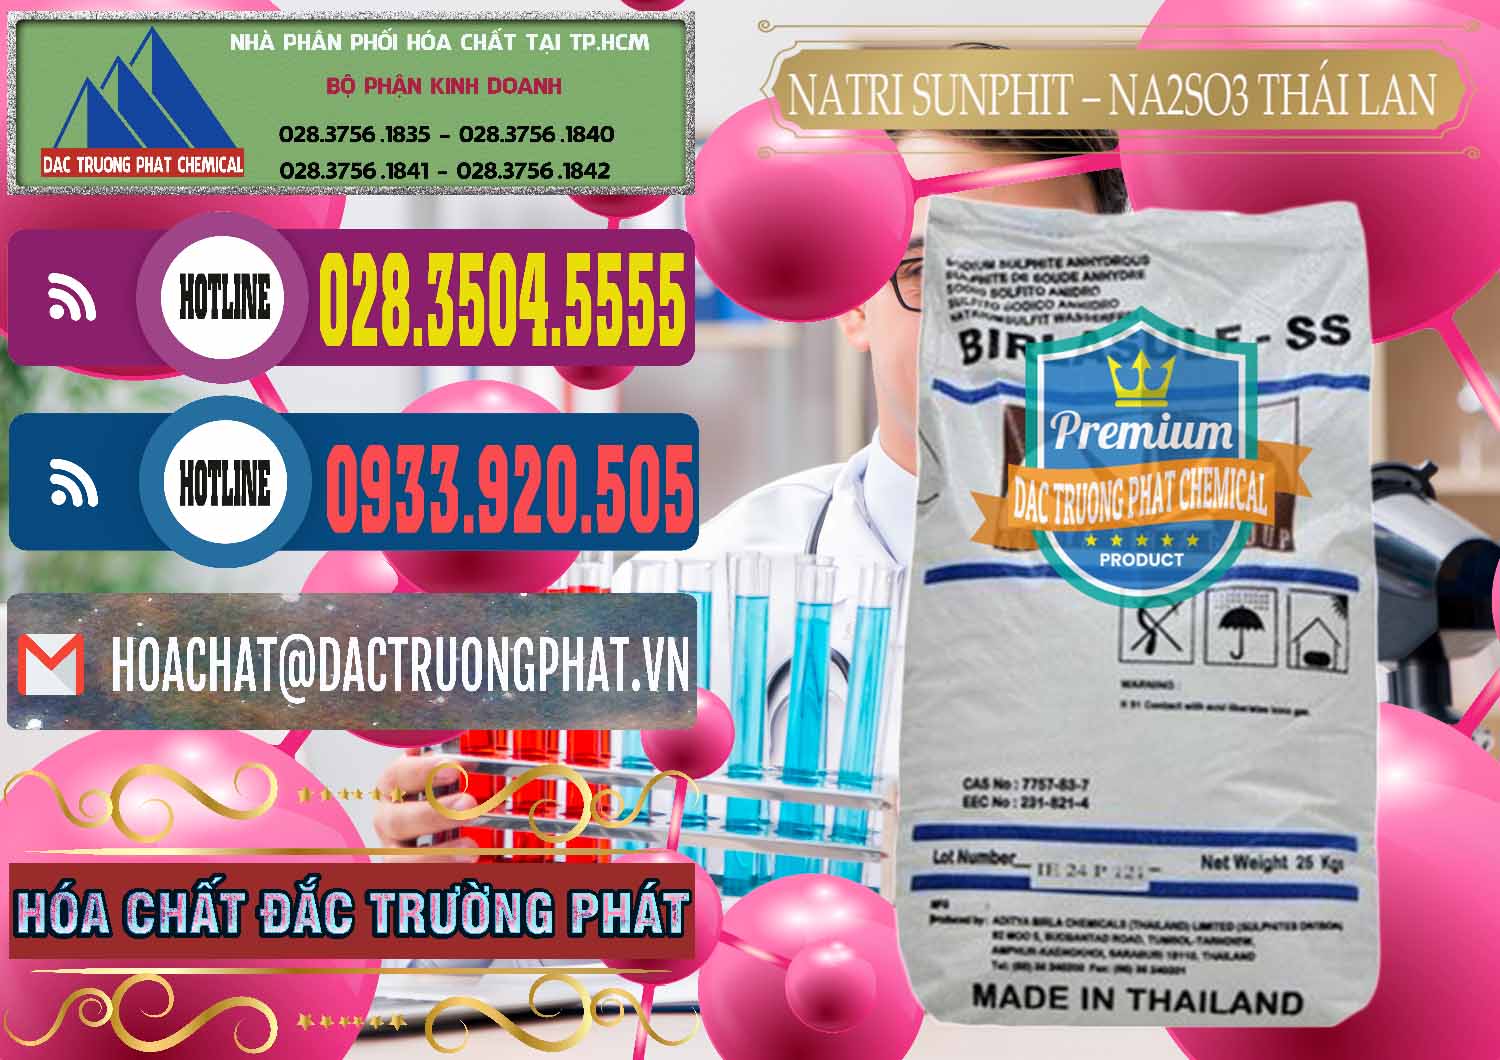 Đơn vị nhập khẩu & bán Natri Sunphit - NA2SO3 Thái Lan - 0105 - Công ty phân phối và cung cấp hóa chất tại TP.HCM - muabanhoachat.com.vn